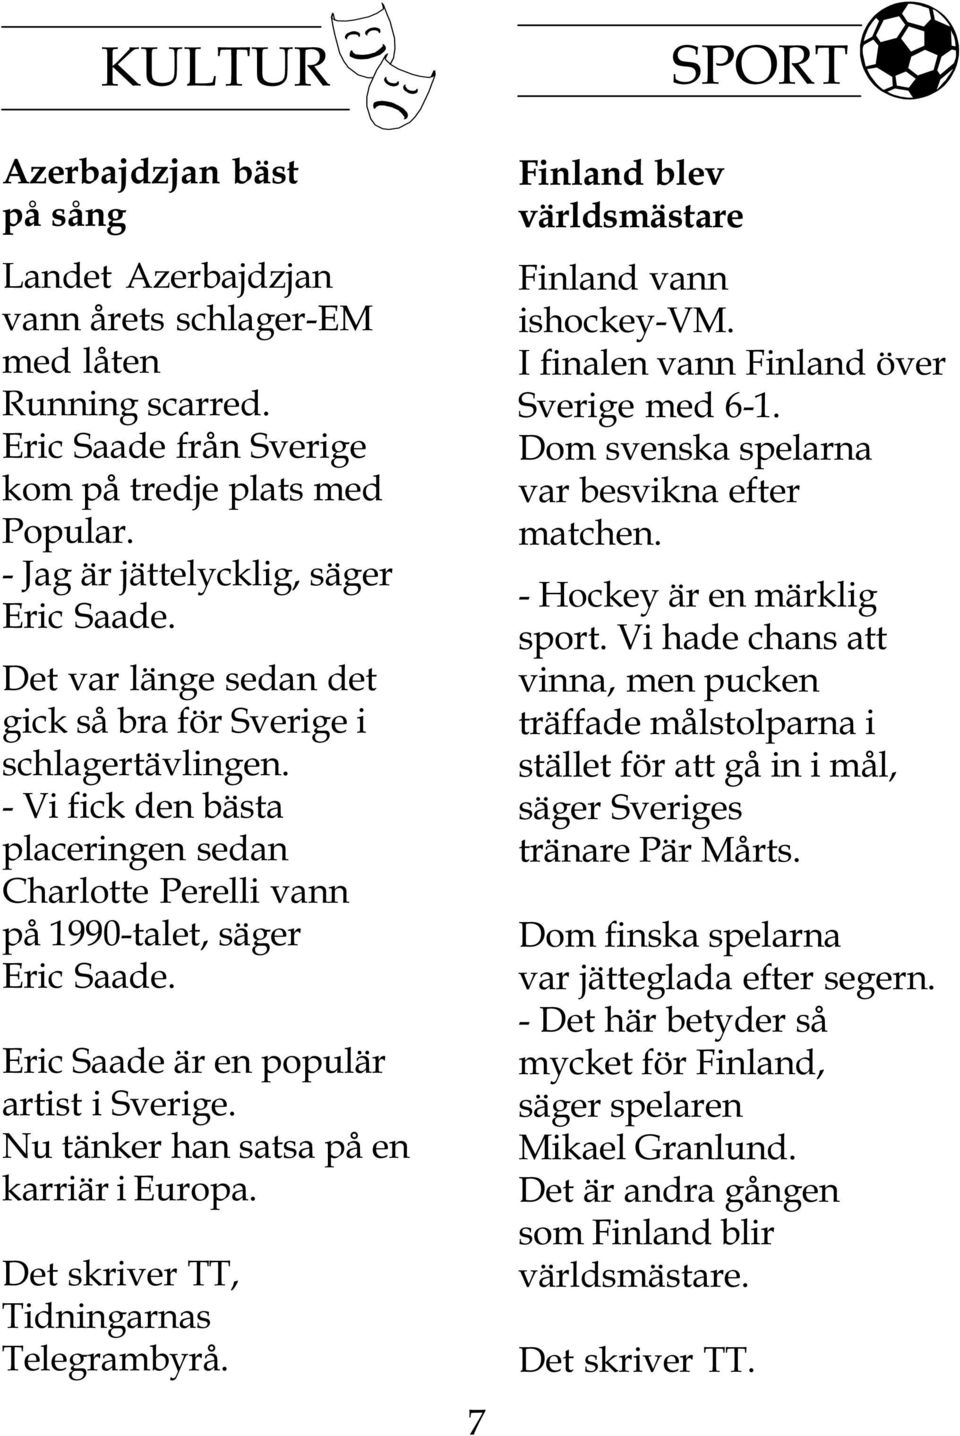 Eric Saade är en populär artist i Sverige. Nu tänker han satsa på en karriär i Europa. Det skriver TT, Tidningarnas Telegrambyrå. 7 Finland blev världsmästare Finland vann ishockey-vm.